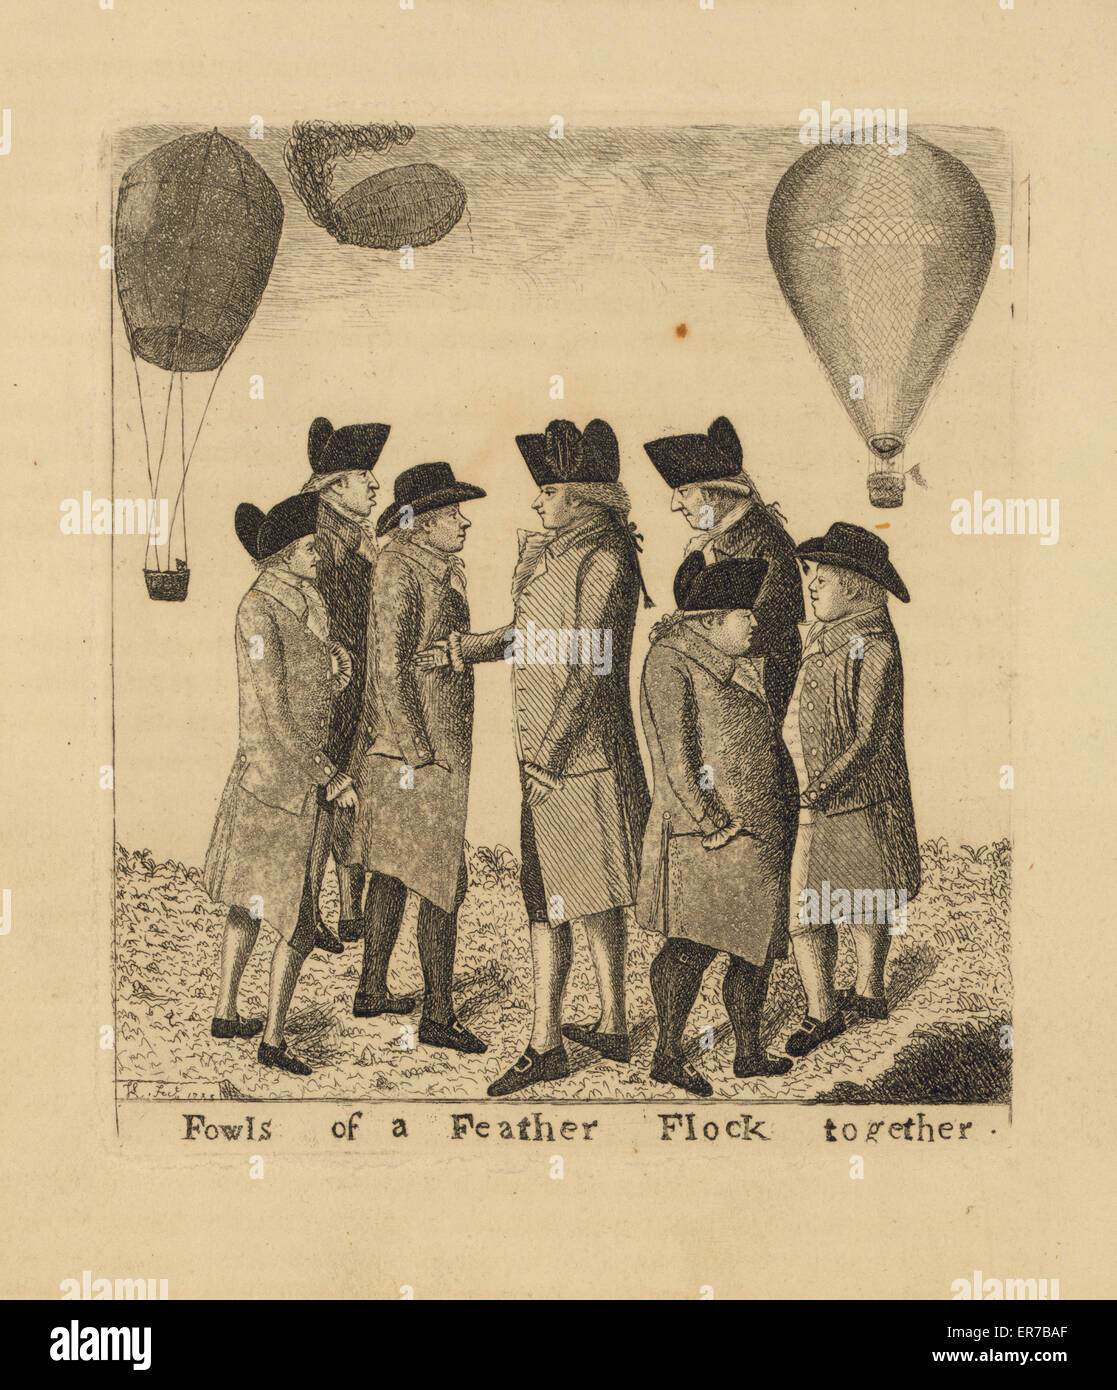 Vögel des eine Feder Herde zusammen. Schottische Karikatur zeigt eine Gruppe von Männern im Gespräch wie Ballons über Kopf Segeln. Möglicherweise schottischen Ballonfahrer James Tytler und italienischen Ballonfahrer Vincent Lunardi. Datum, 1785. Stockfoto